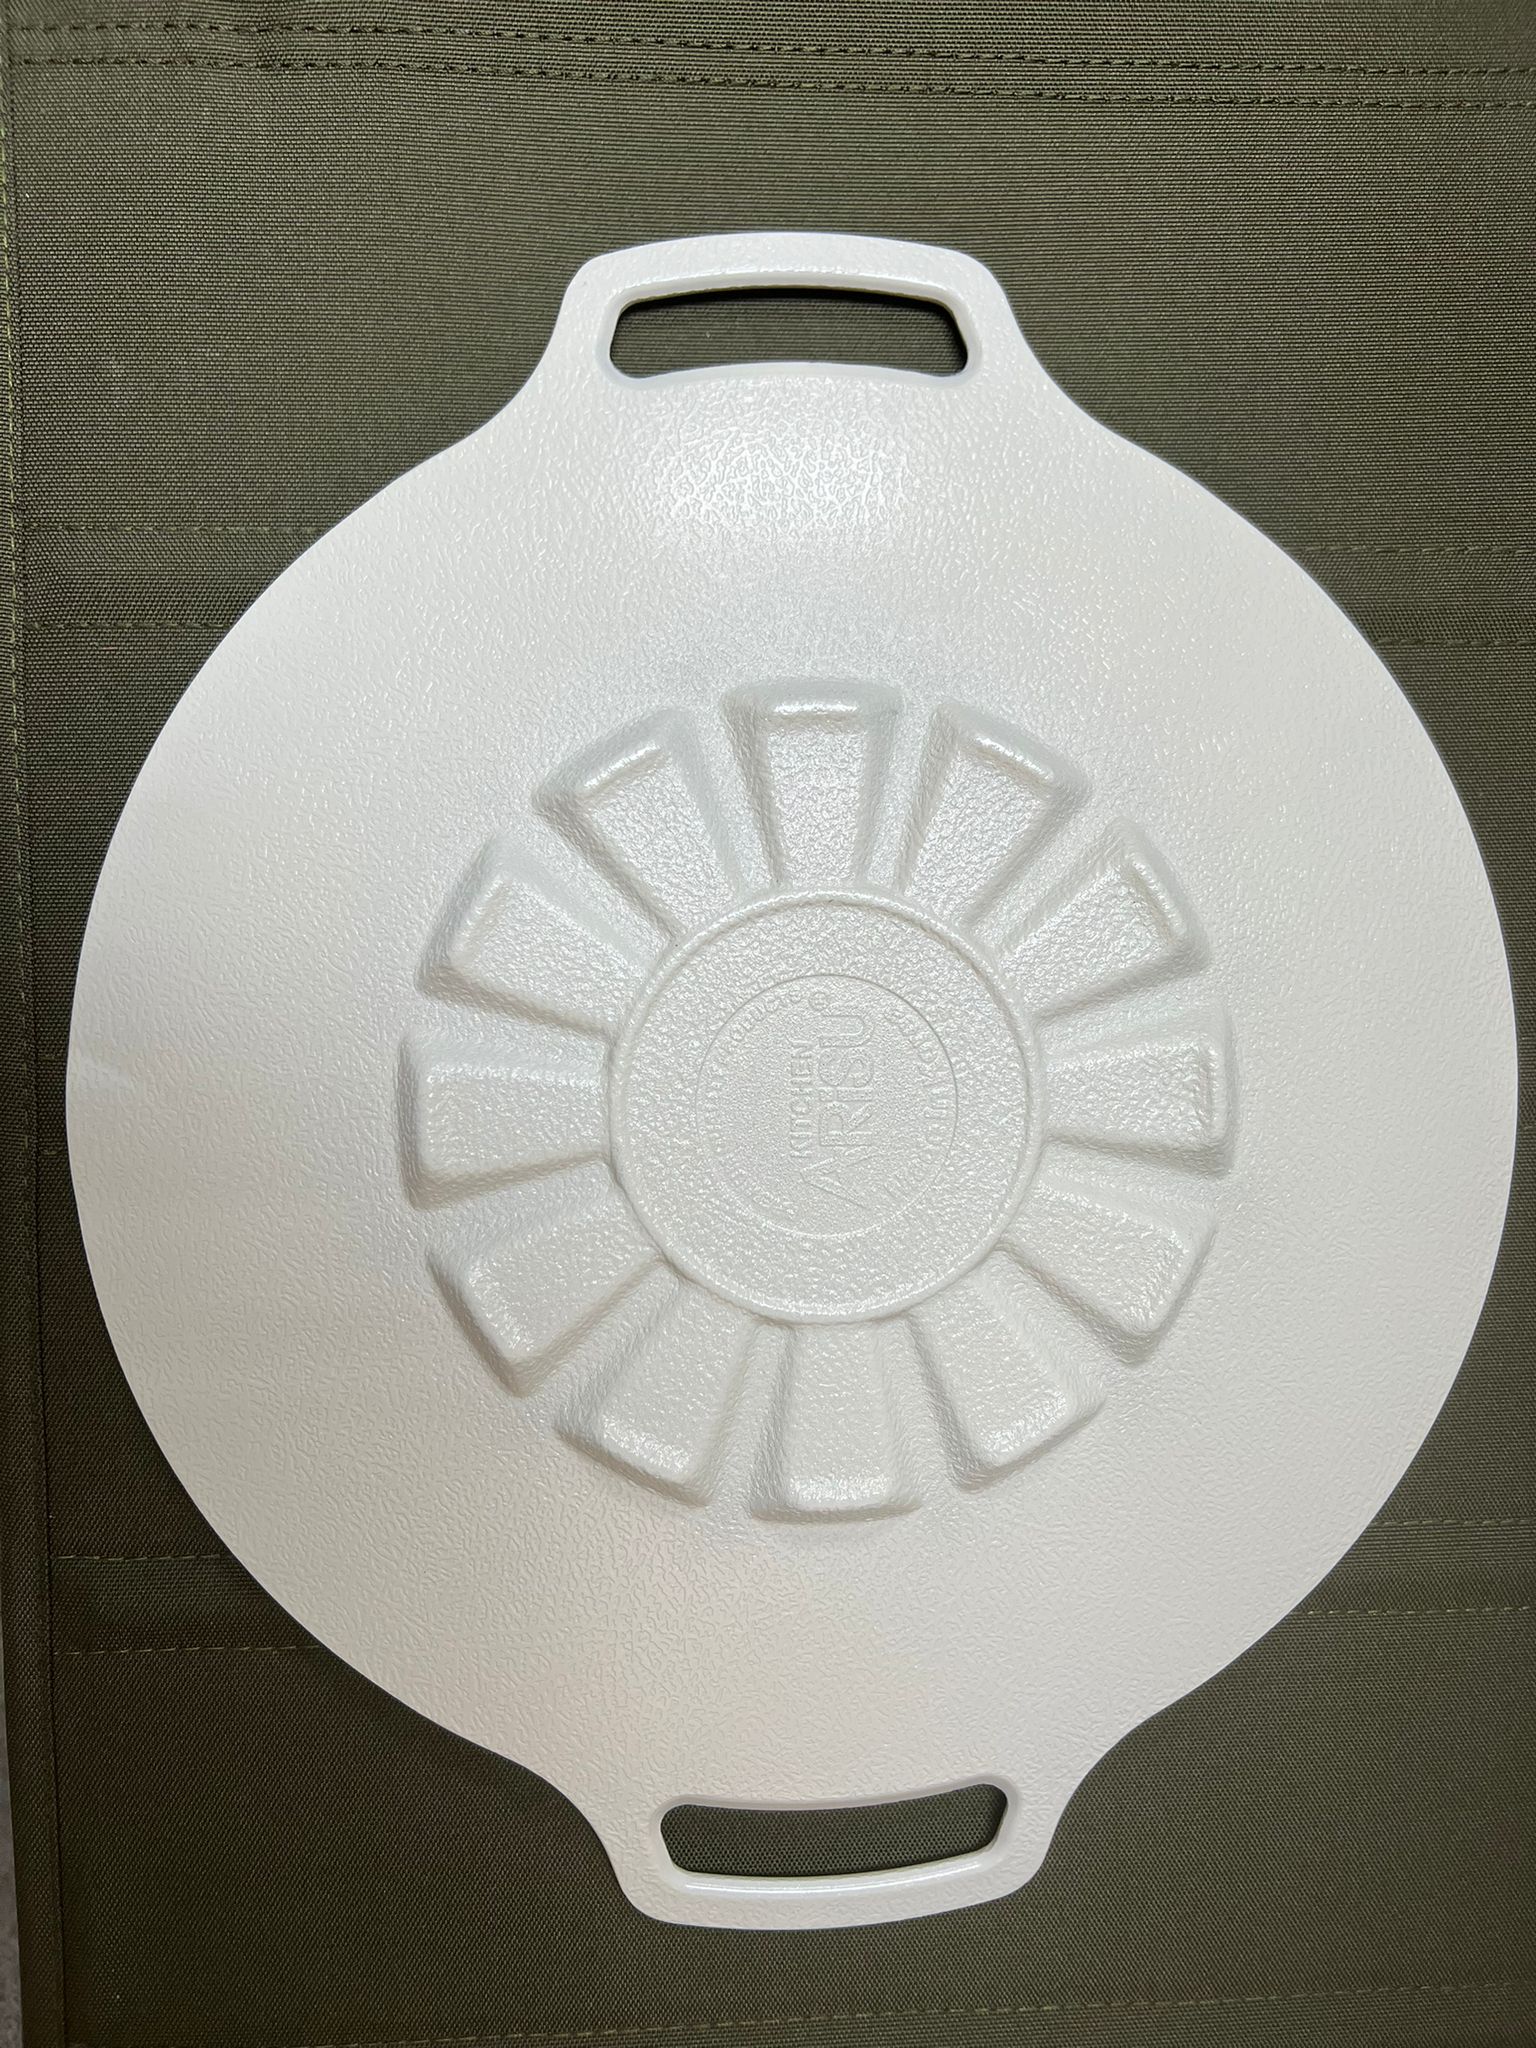 Arisu Casting Griddle 29cm (IH) 不沾年輪燒烤盤 (電磁爐適用) 白色/黑色